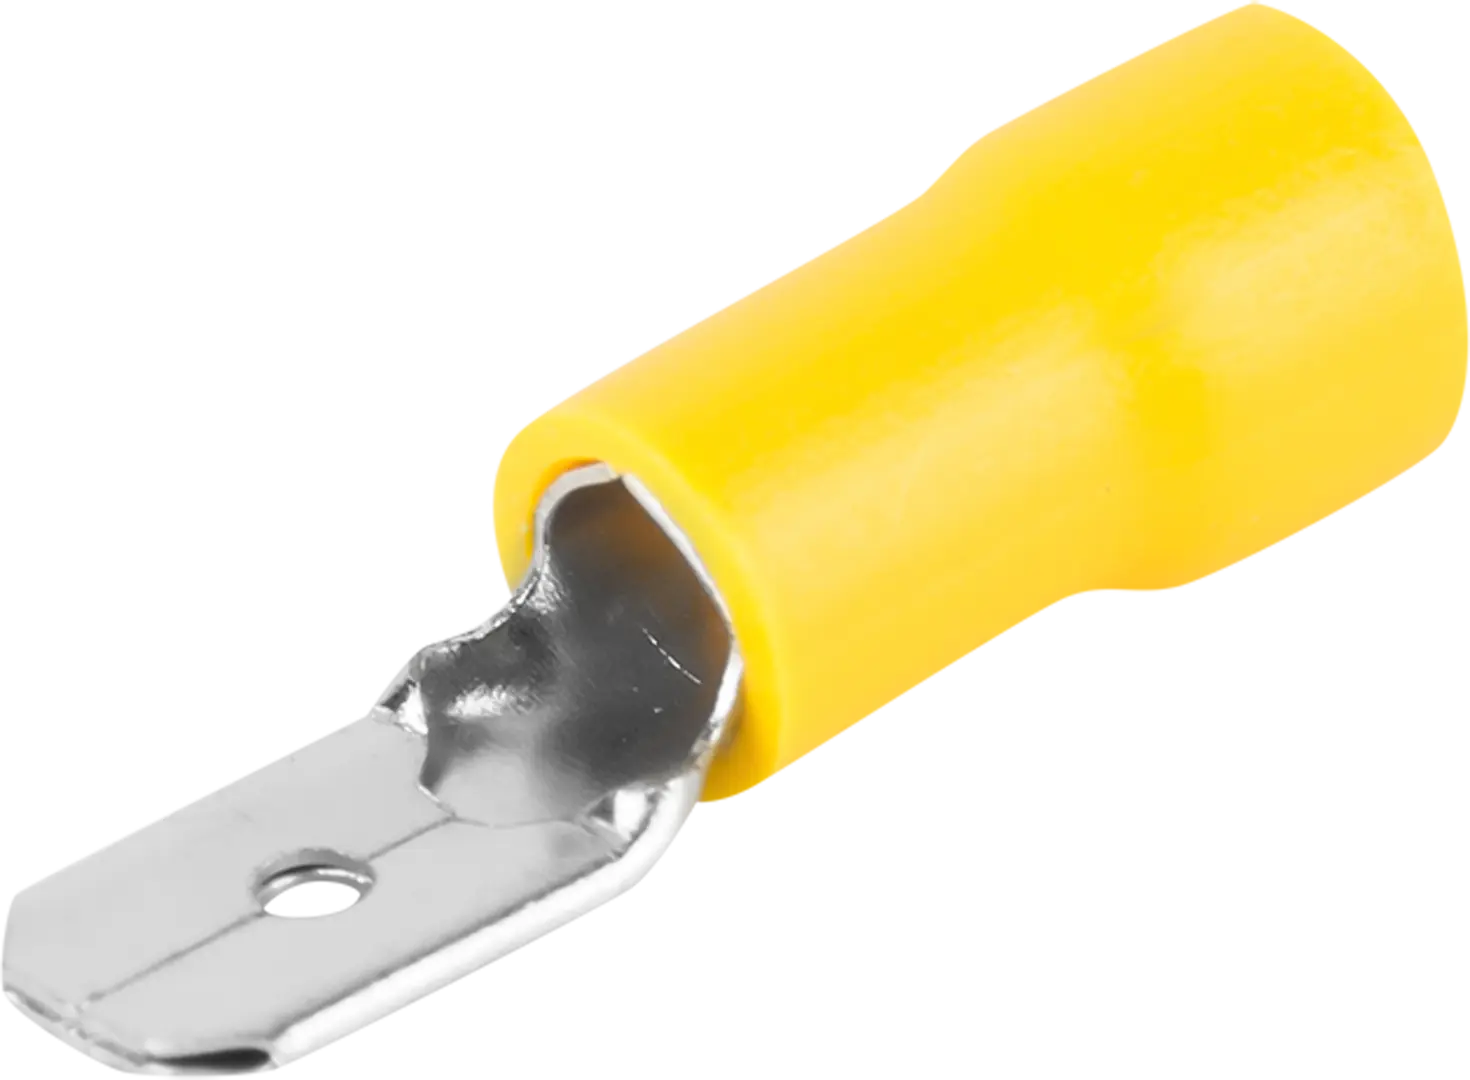 Разъем плоский изолированный папа Duwi РпИп 6-6.3 мм цвет желтый 10 шт. разъем плоский папа duwi рпи п н 6 6 3 мм 6 мм² цвет желтый 10 шт